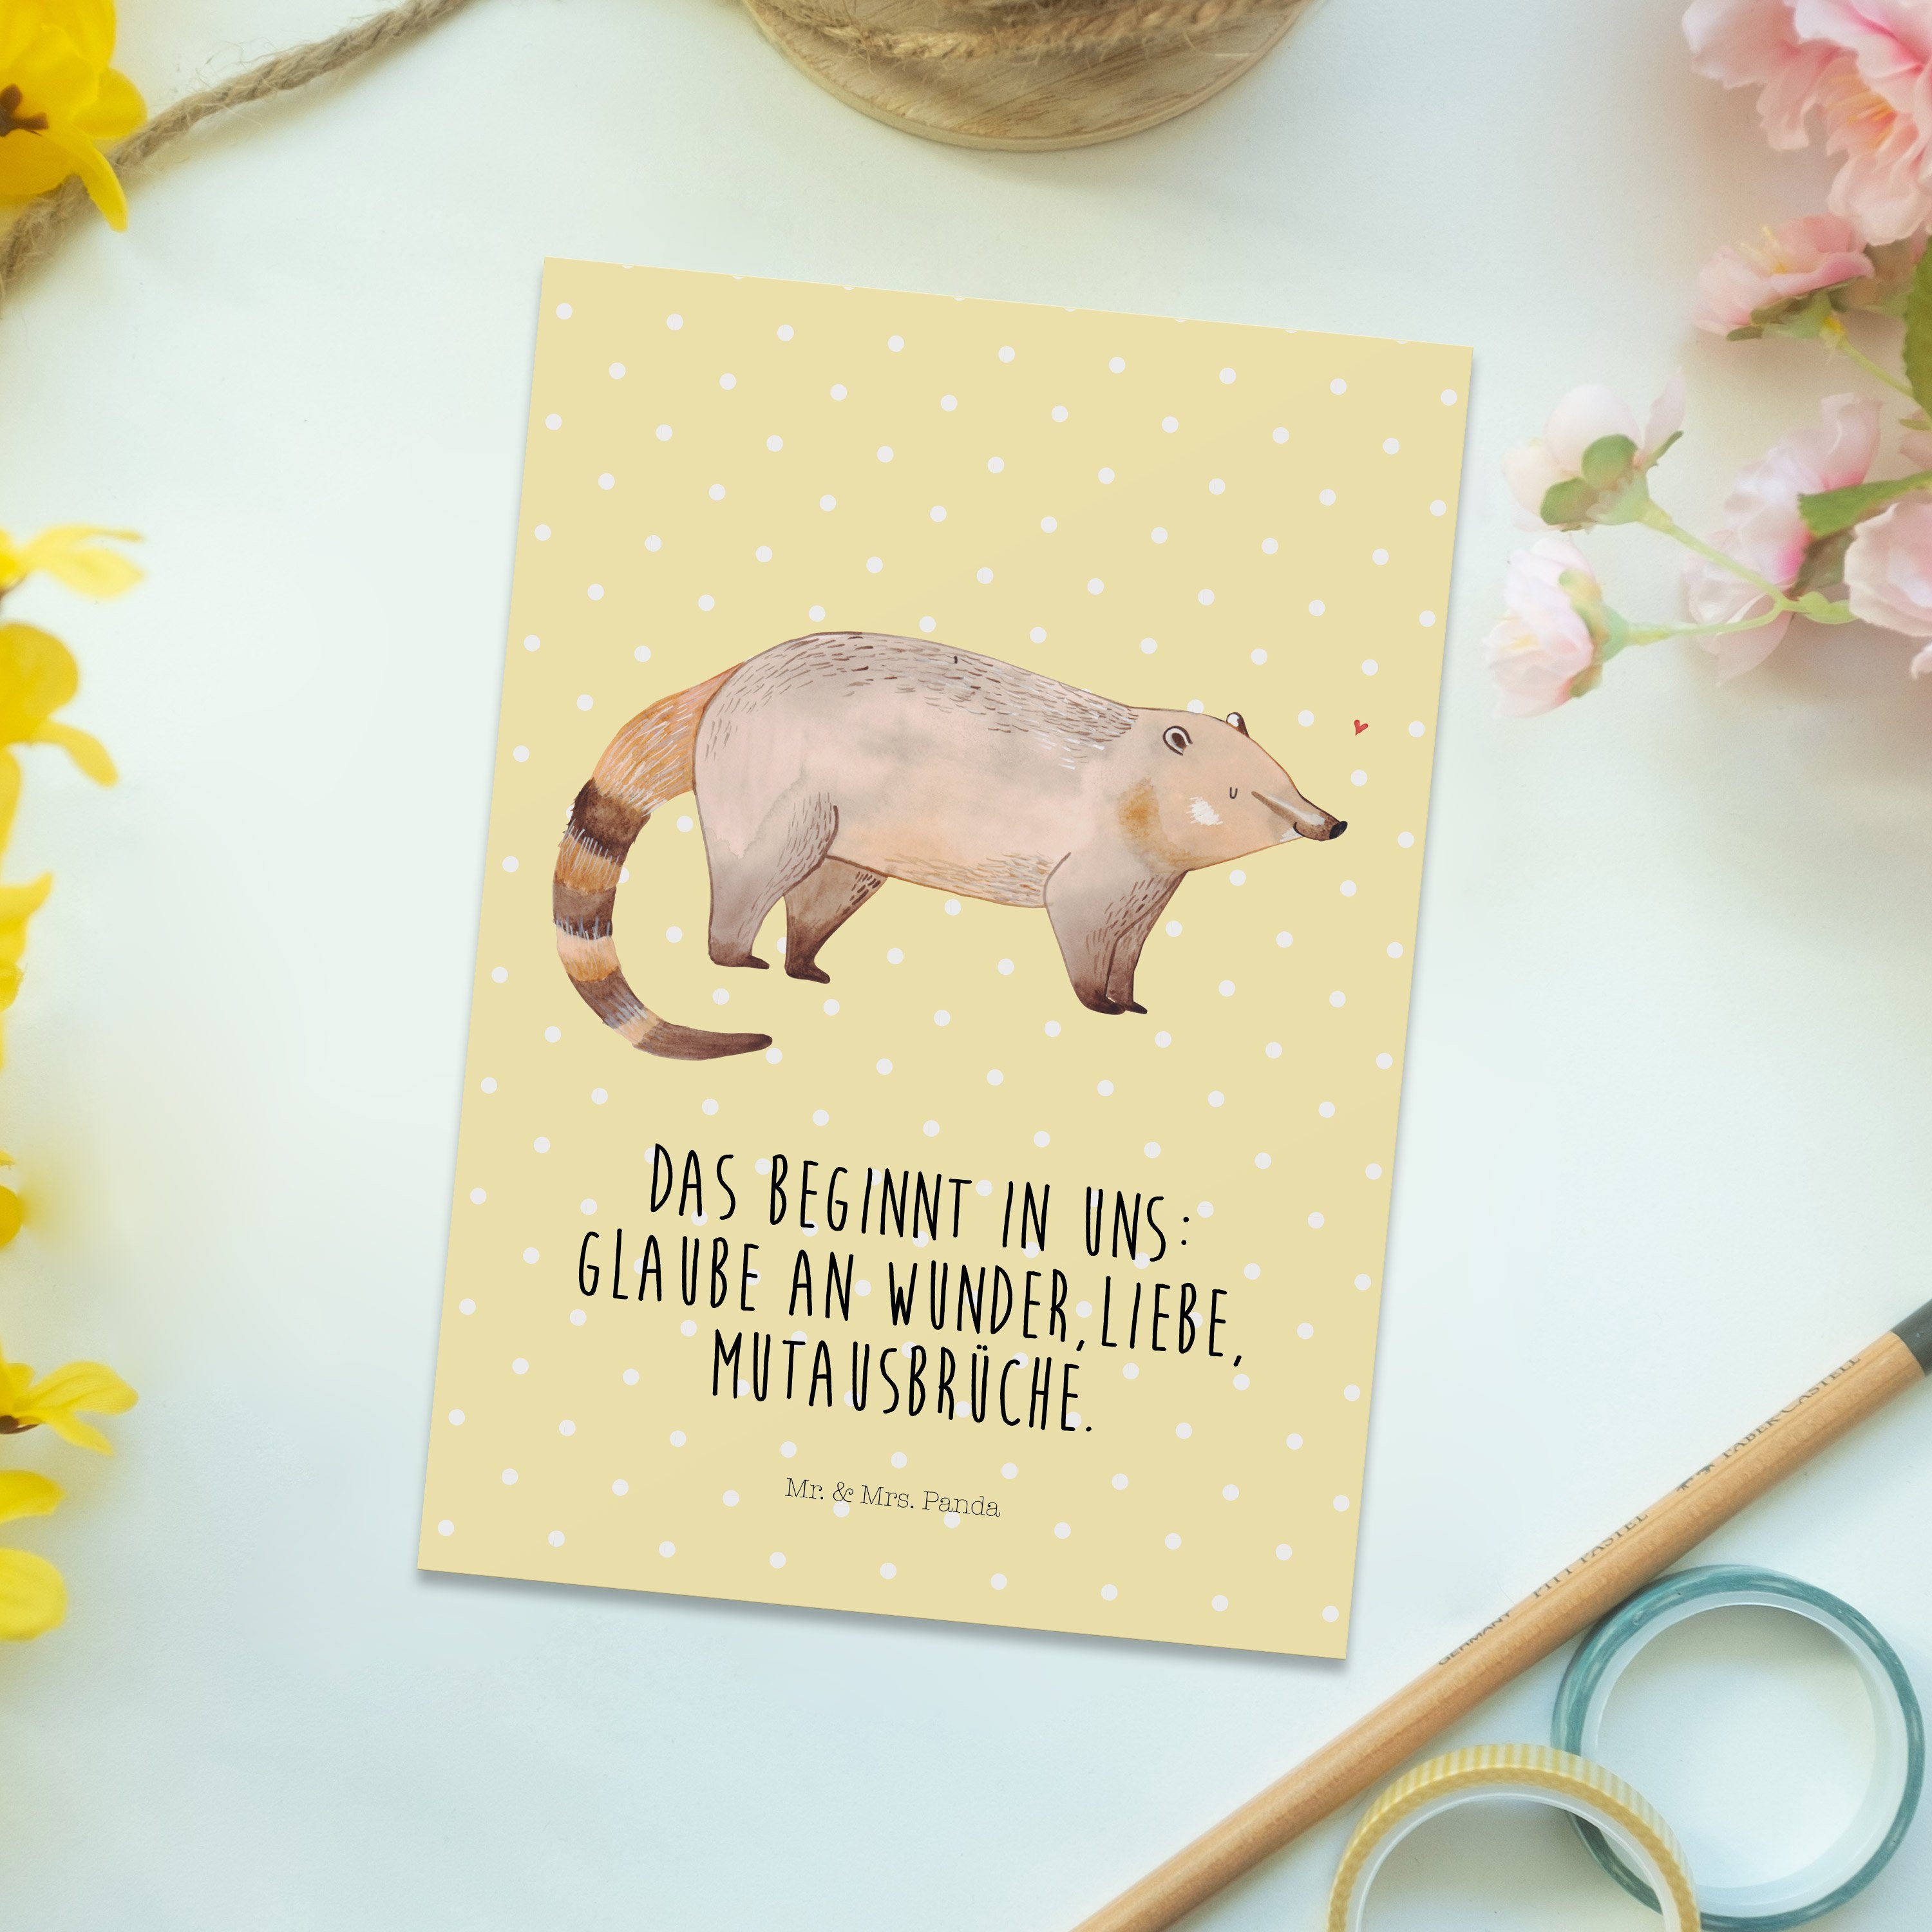 Mrs. Postkarte & Pastell Sprüche, - Geschenkkarte, Mr. Panda lustige Geschenk, N Gelb - Nasenbär